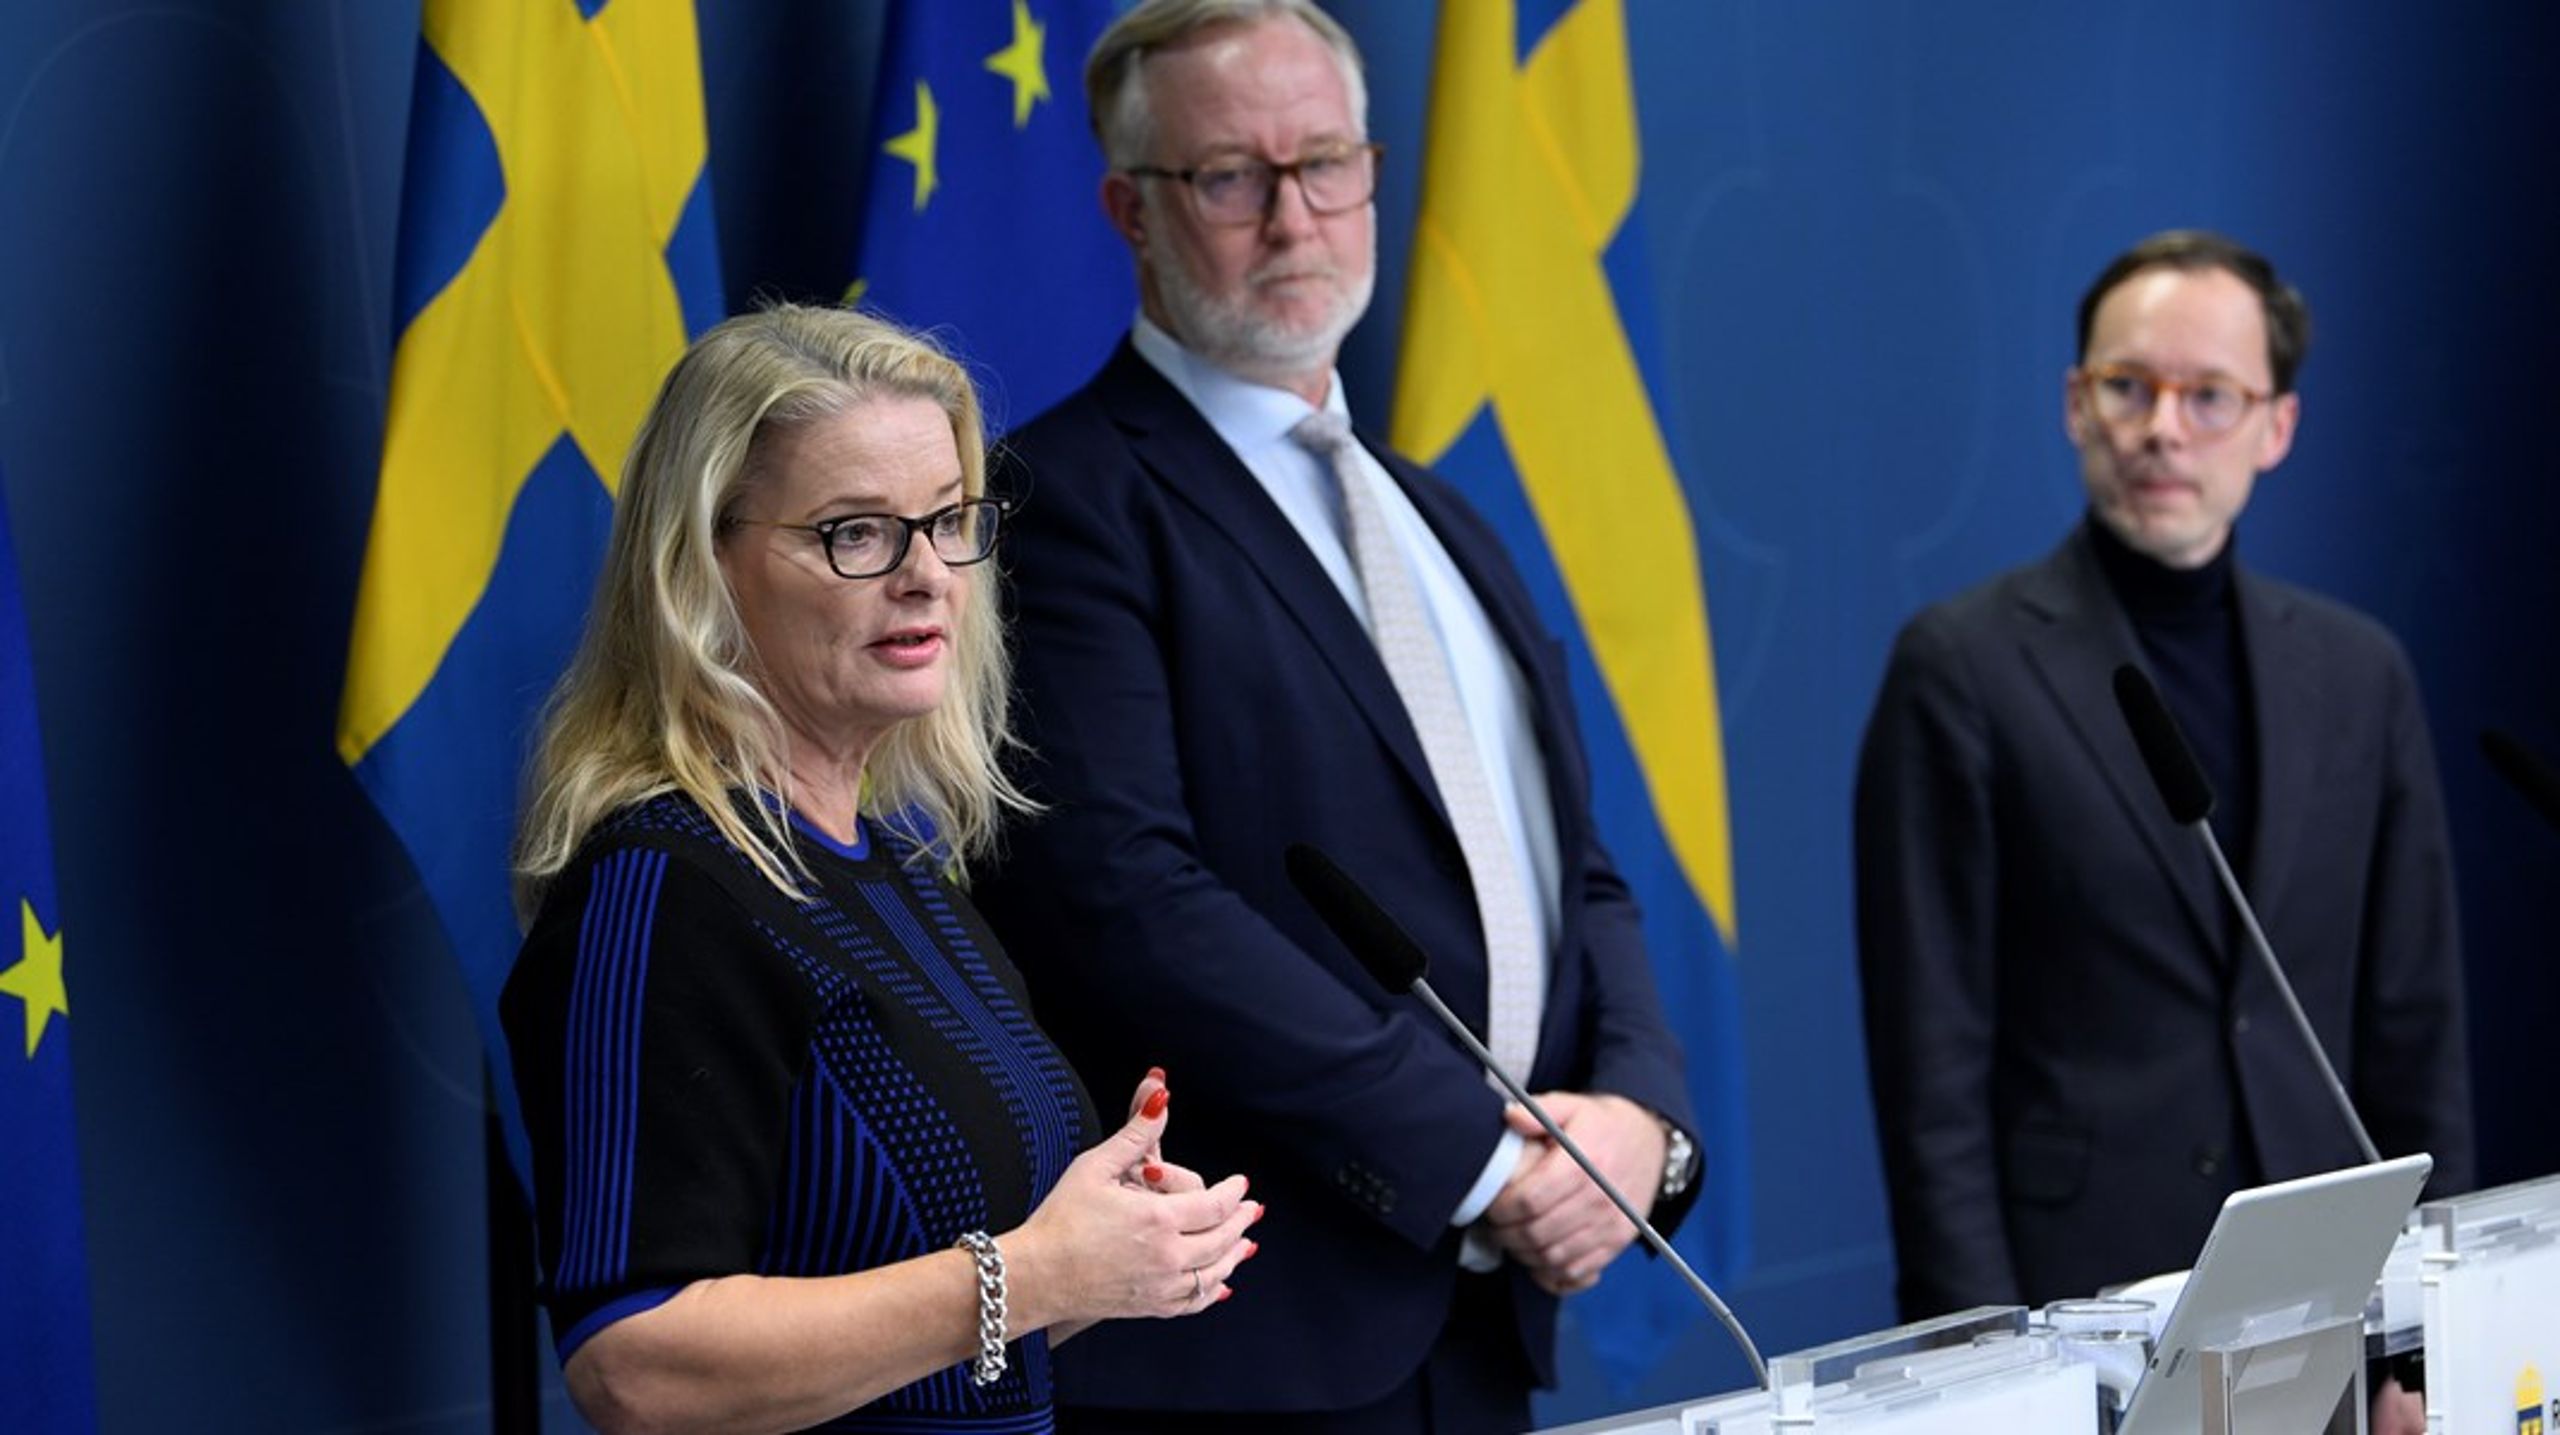 Om ministrarna Lotta Edholm och Mats Persson ska lyckas göra ingenjörsutbildningarna mer attraktiva krävs en strategi som involverar både grundskola och högskola, menar debattörerna.